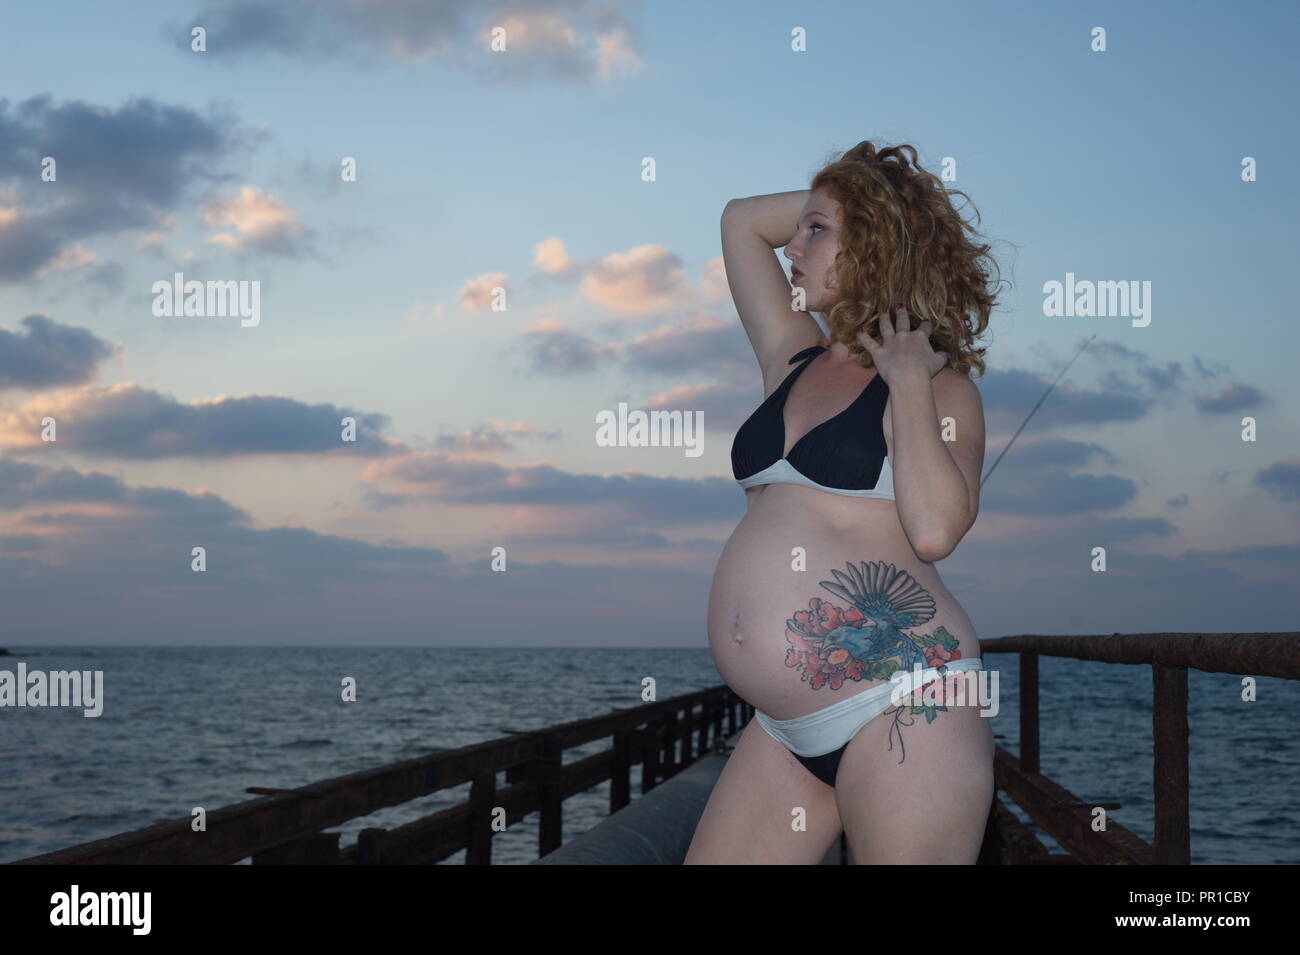 Incredibile la gravidanza della donna con un tatuaggio in mare Foto Stock